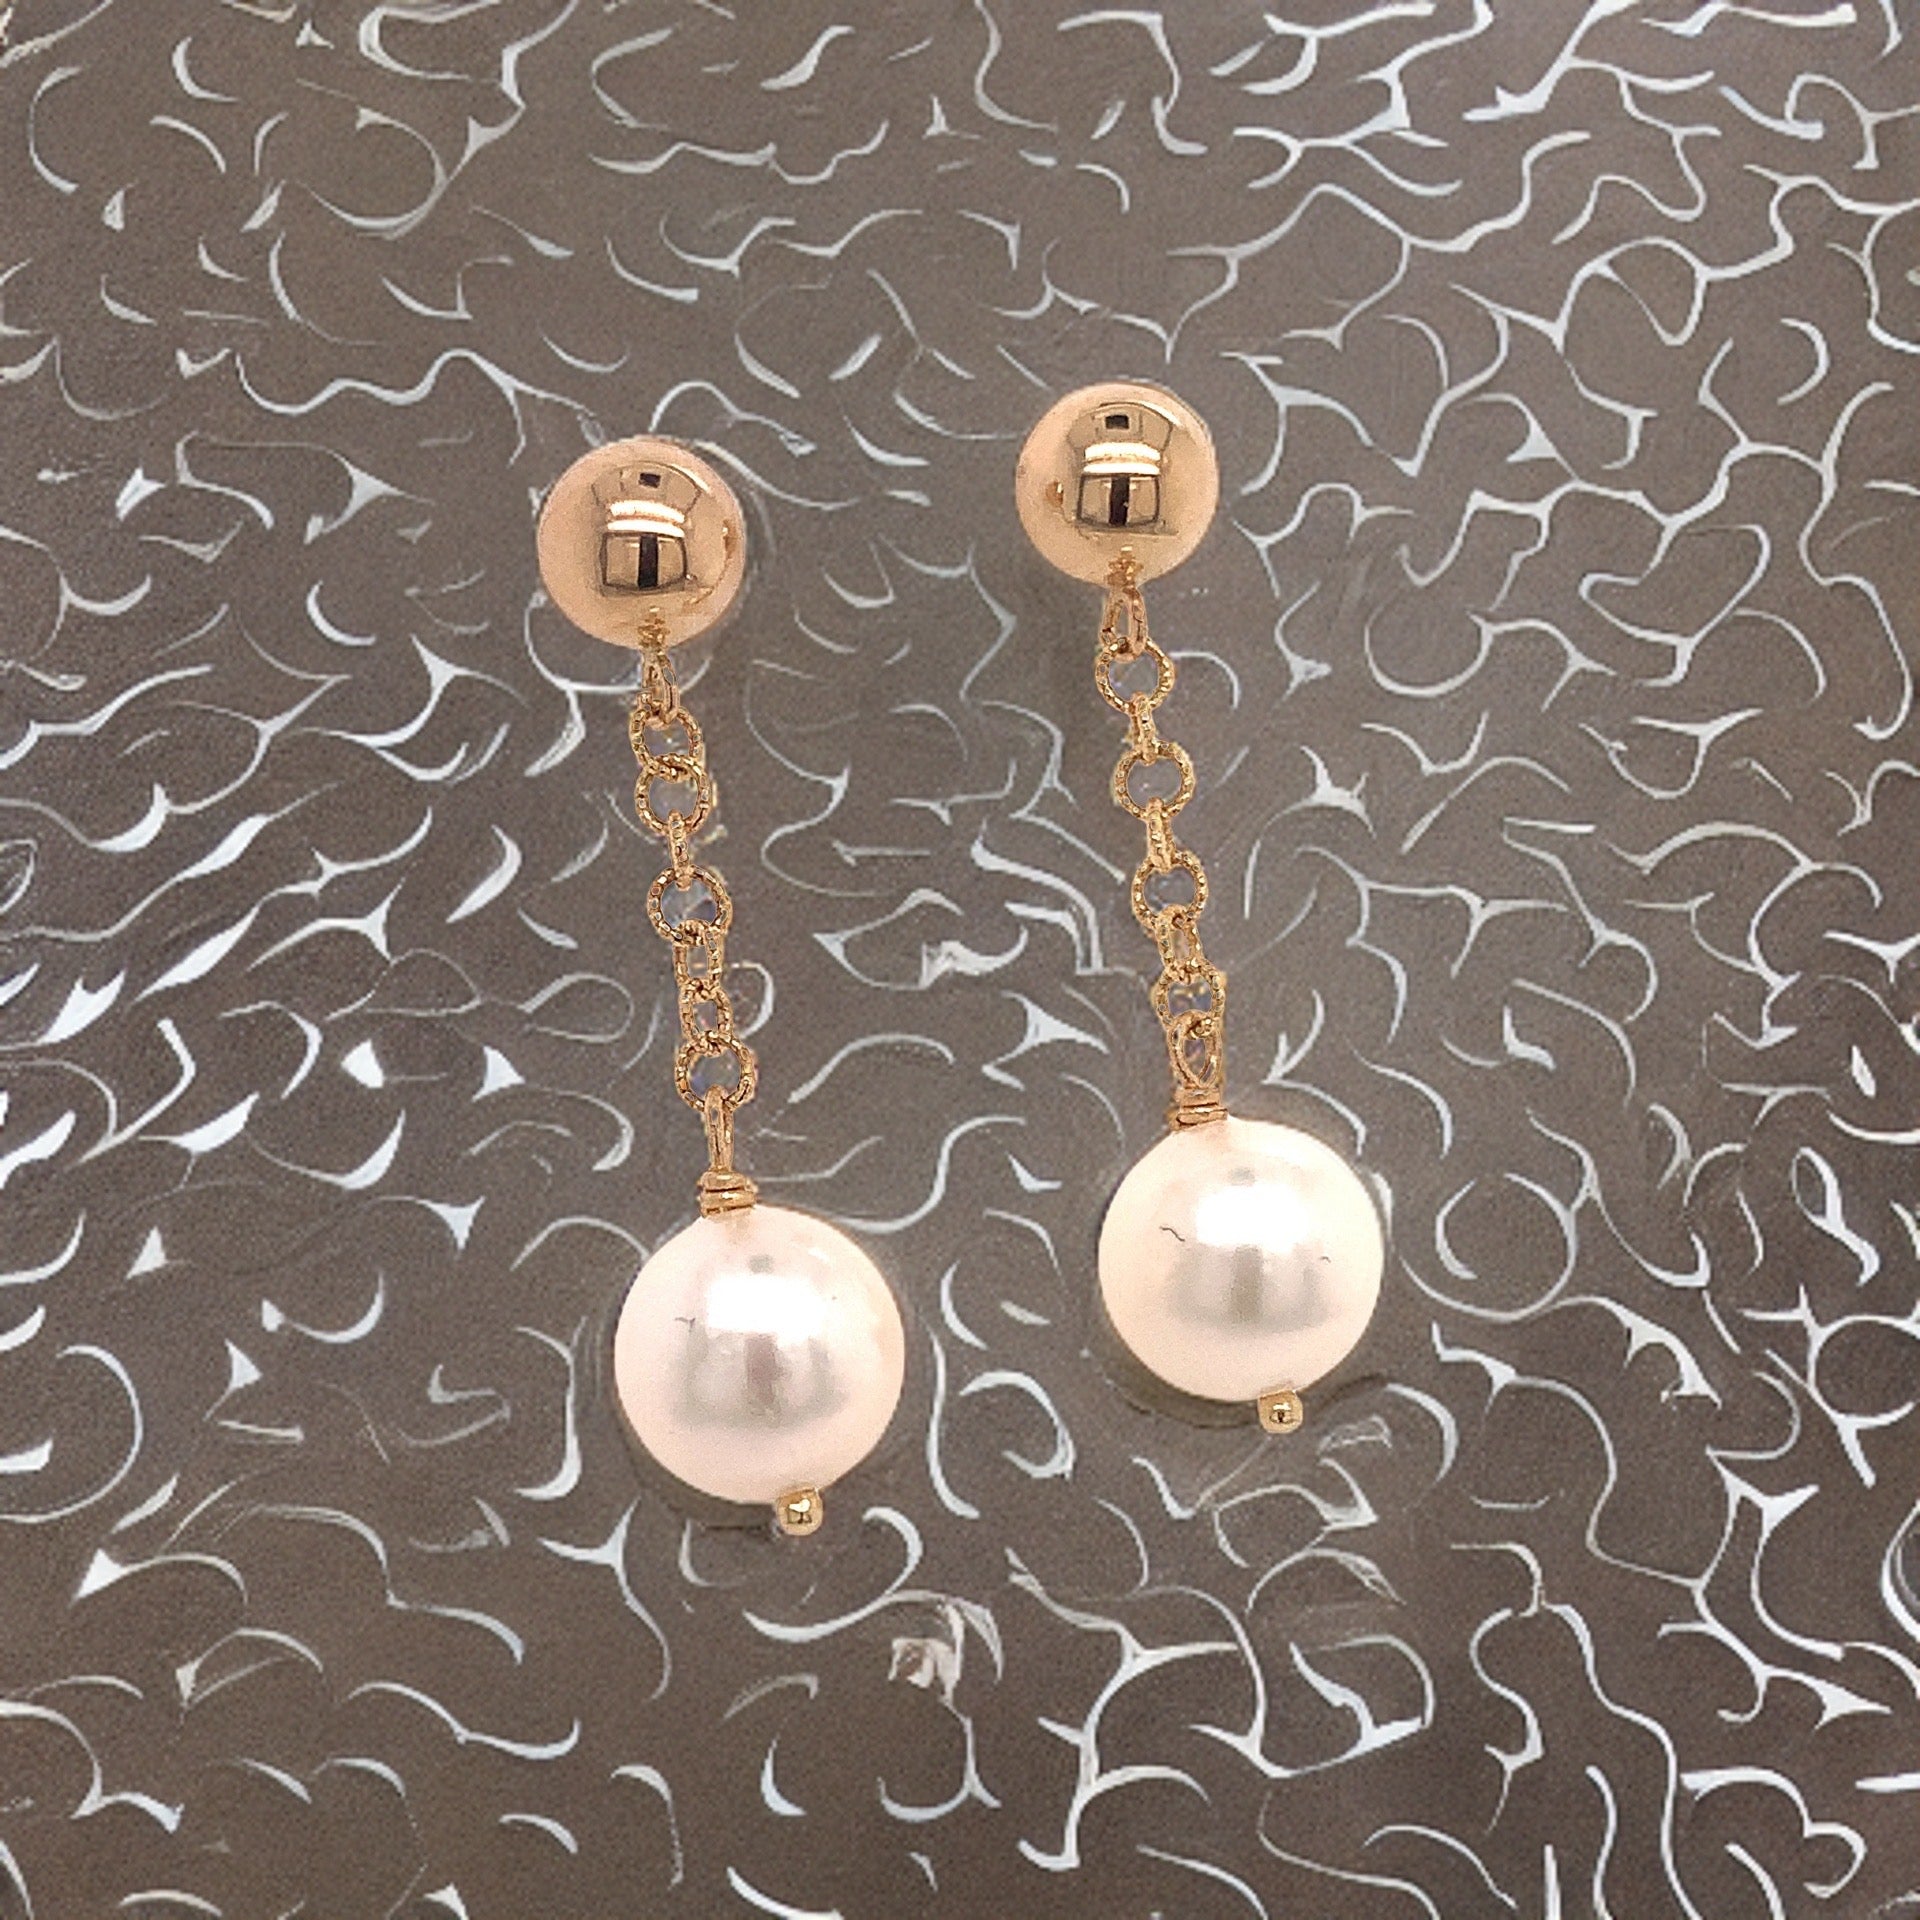 Akoya Pearl Dangle Earrings 1.25" 14k Gold 8.19 mm Certified $990 017542 - Certified Fine Jewelry